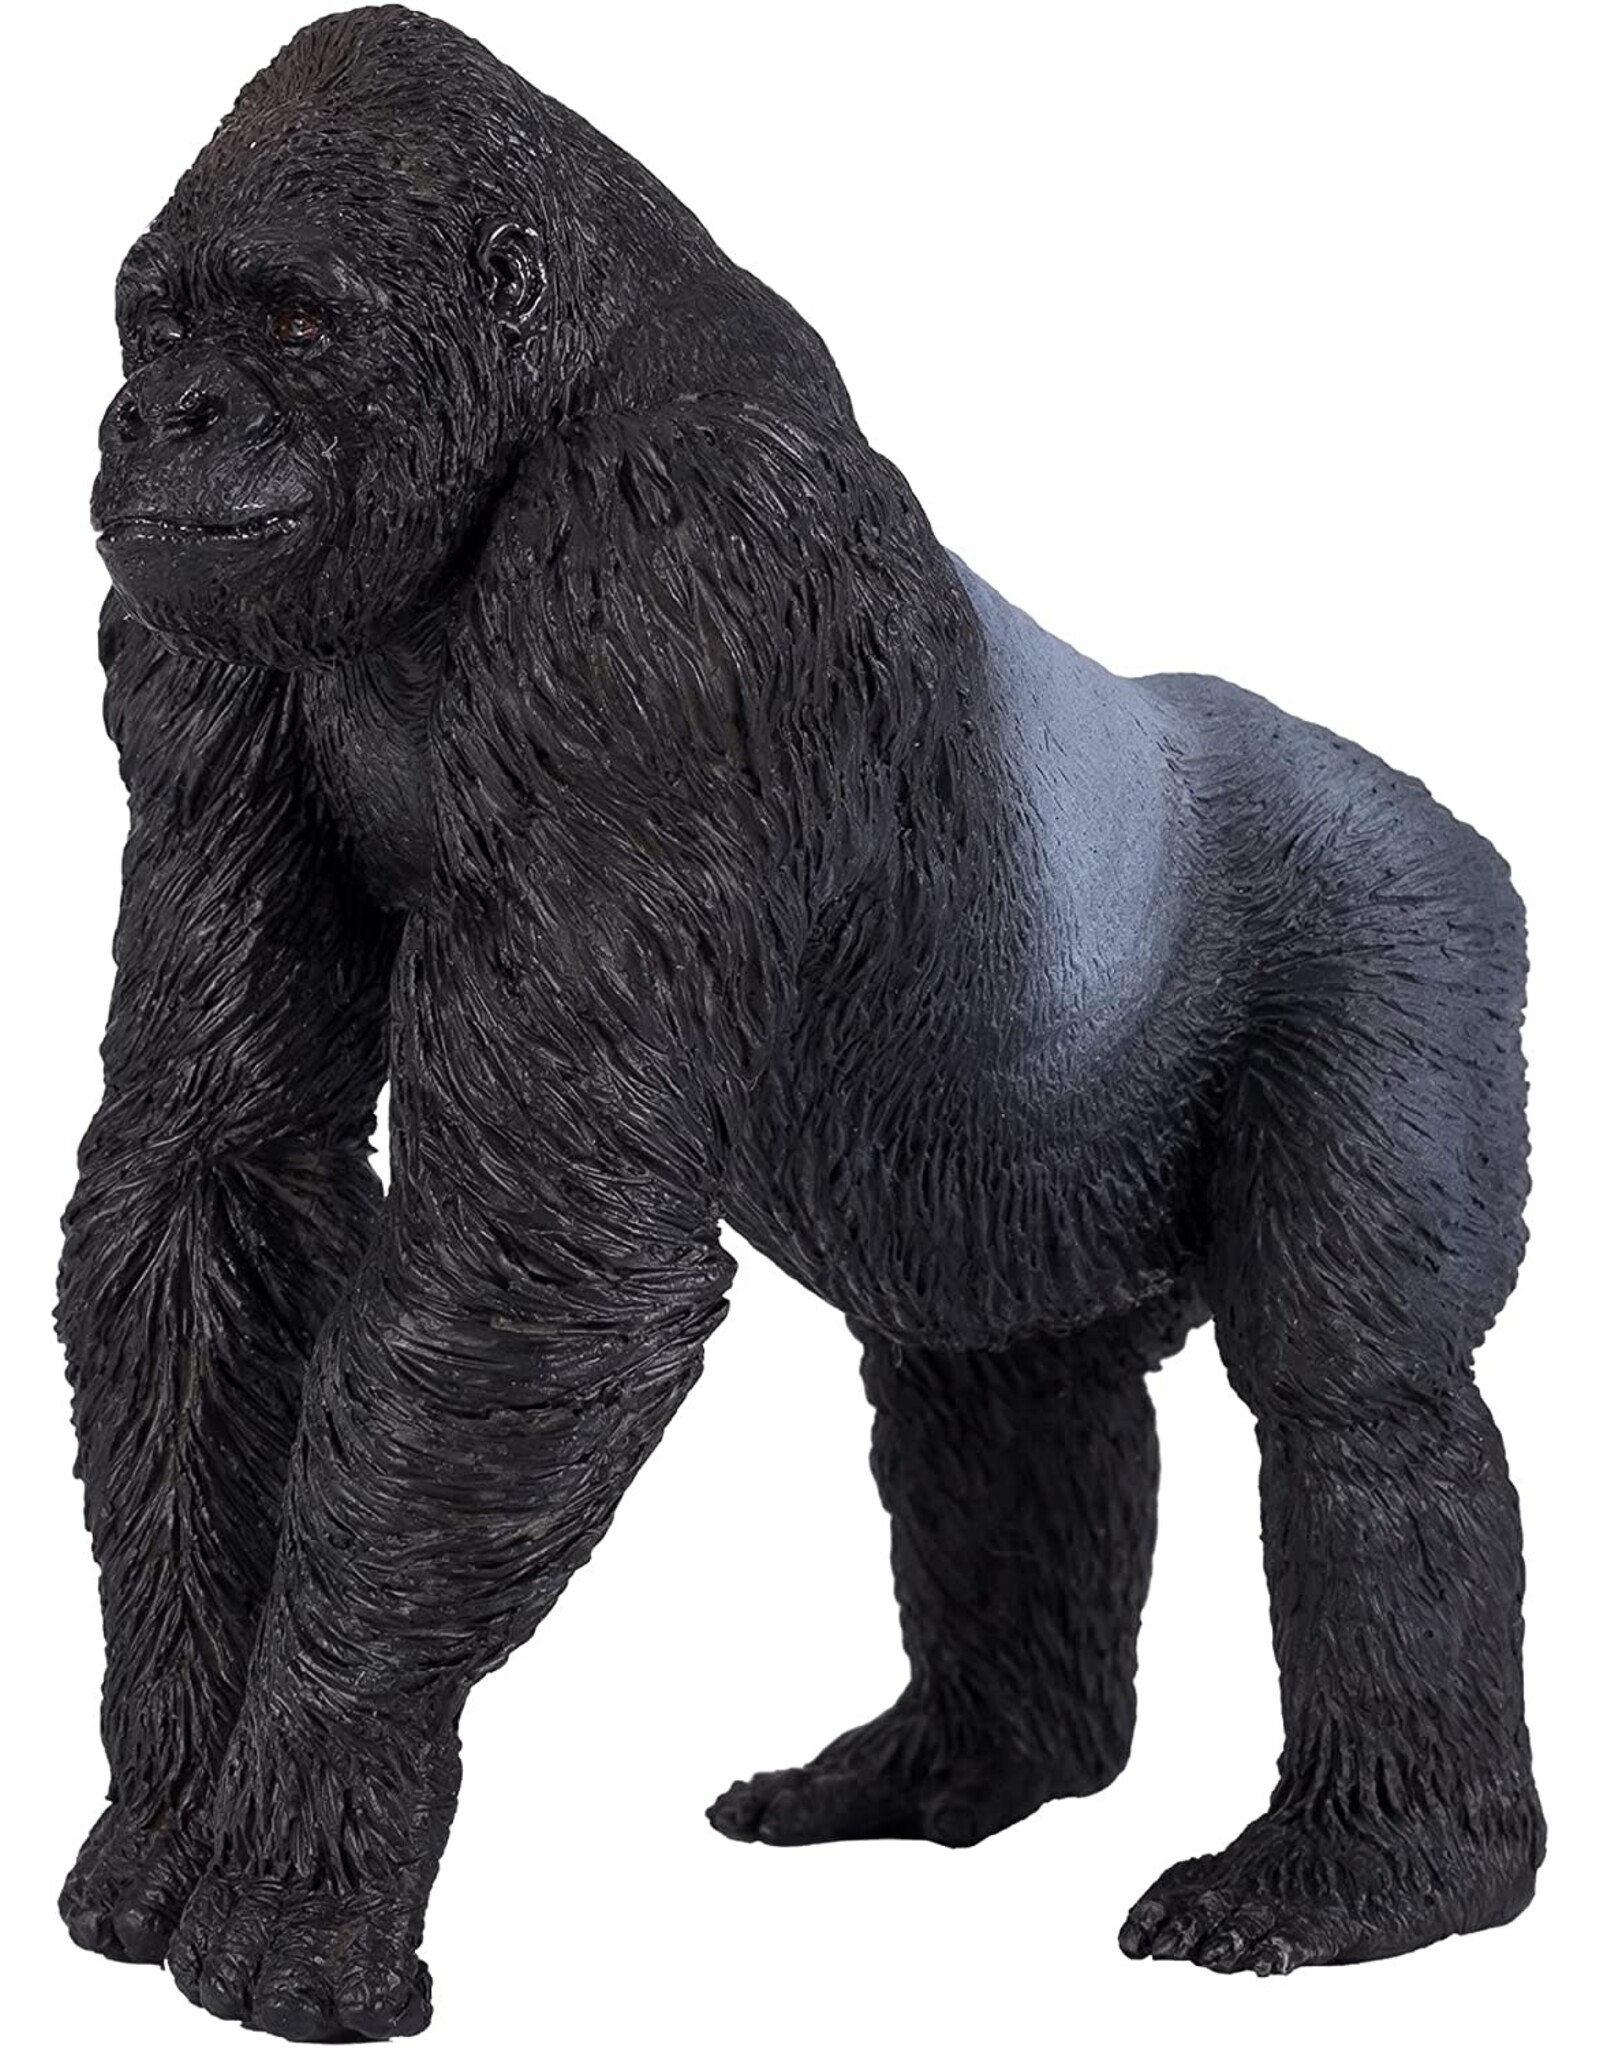 Gorilla Silverback